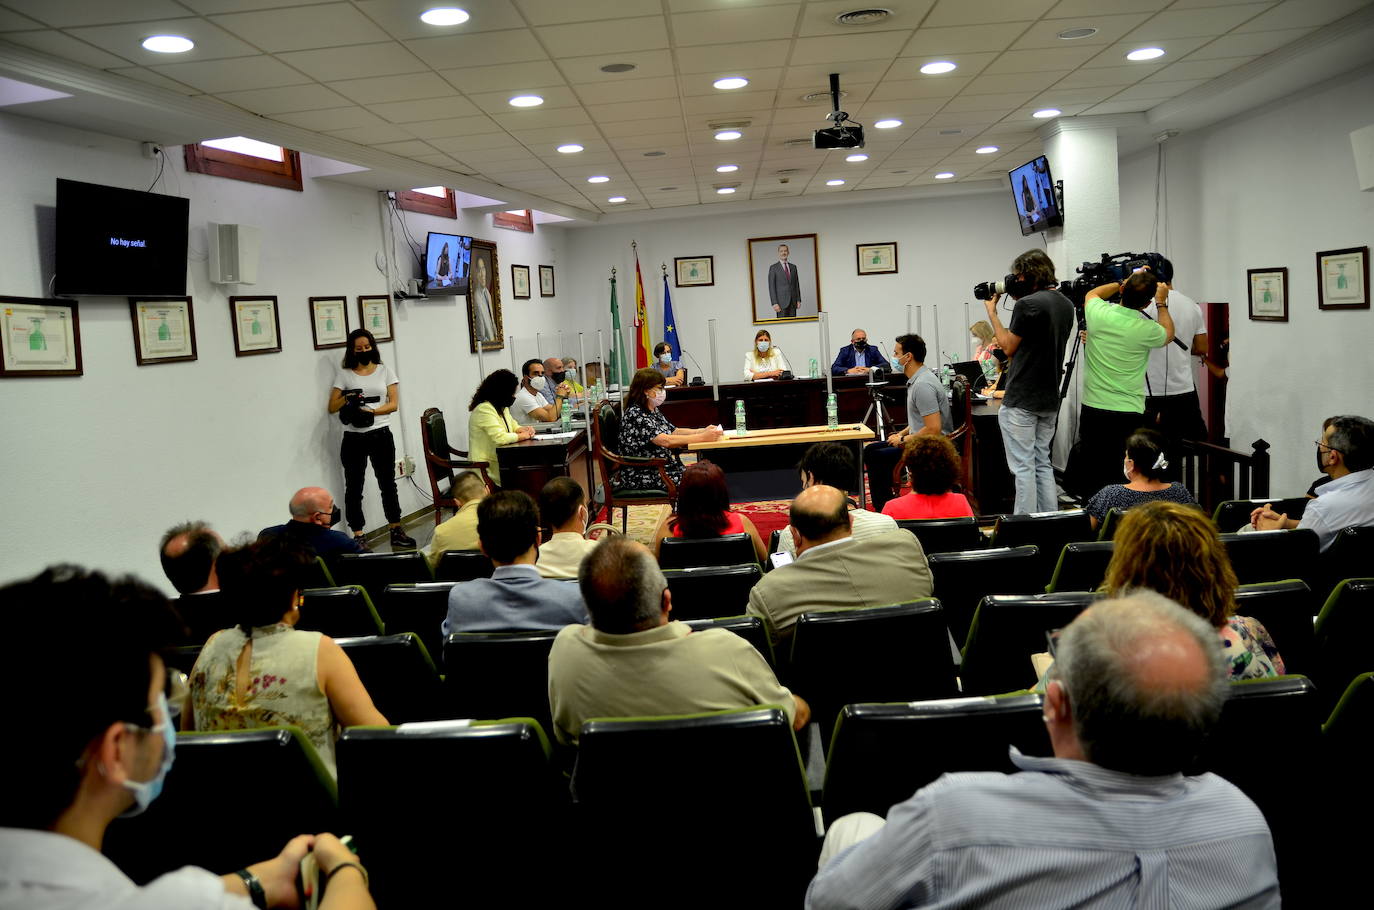 Purificación López Quesada, nueva alcaldesa de La Zubia tras prosperar la moción de censura